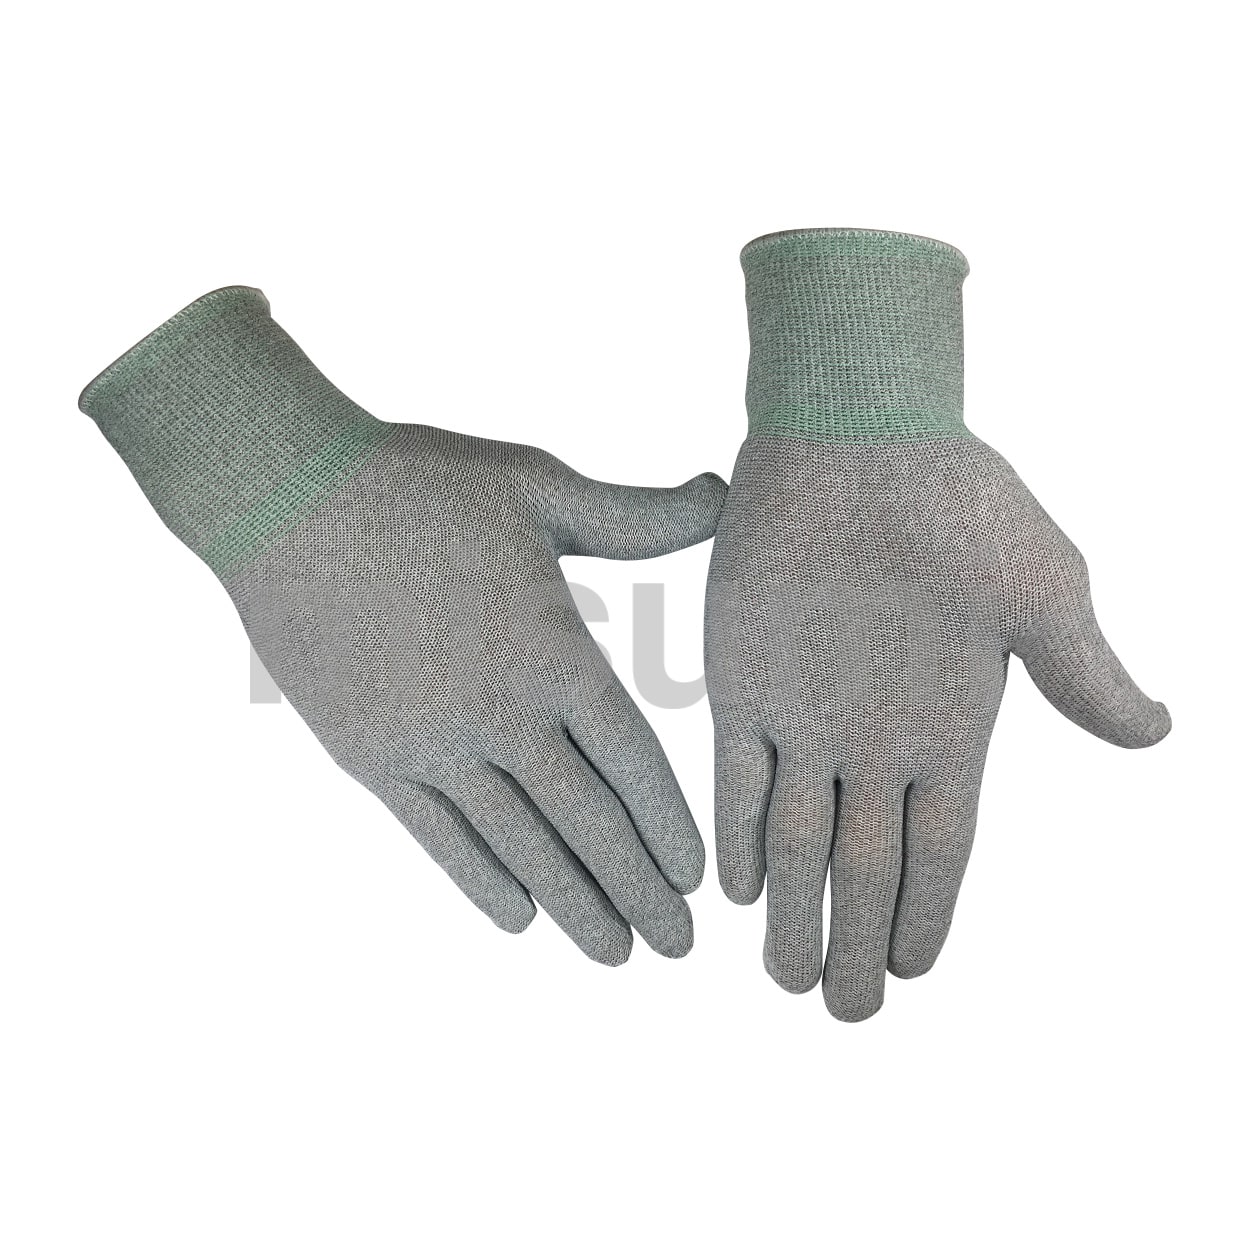 作業用手袋 制電手袋 制電パームフィット手袋 10双入り 静電気対策 ショーワグローブ A0120 - 2